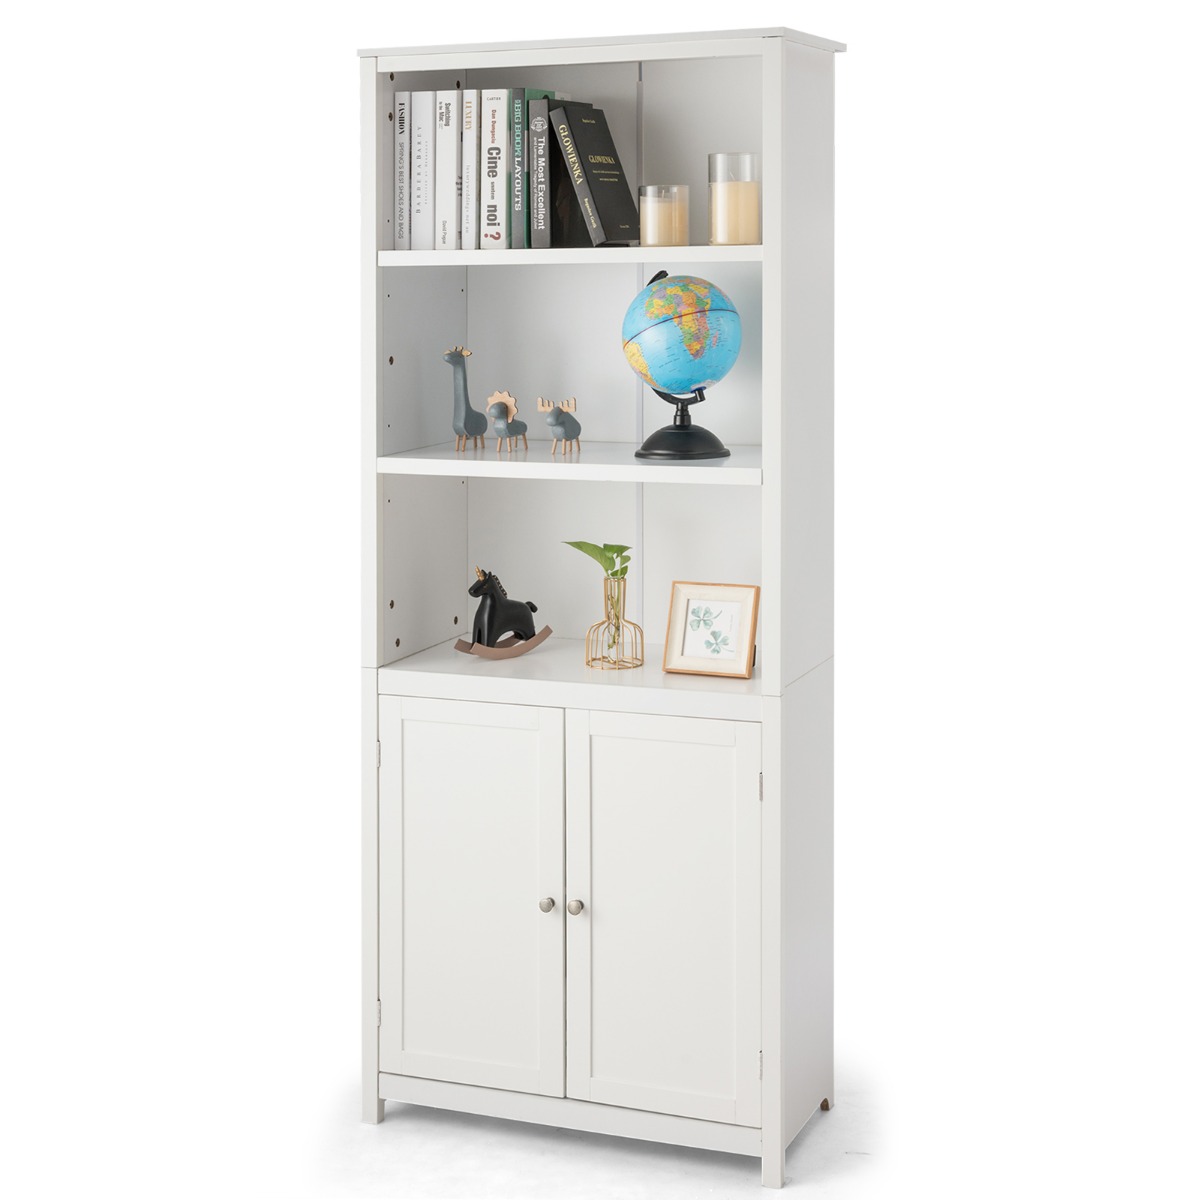 Bücherschrank mit Türen & 3 Offenen Regalen Bücherregal Hochschrank 74,5 x 35,5 x 181,5 cm Weiß